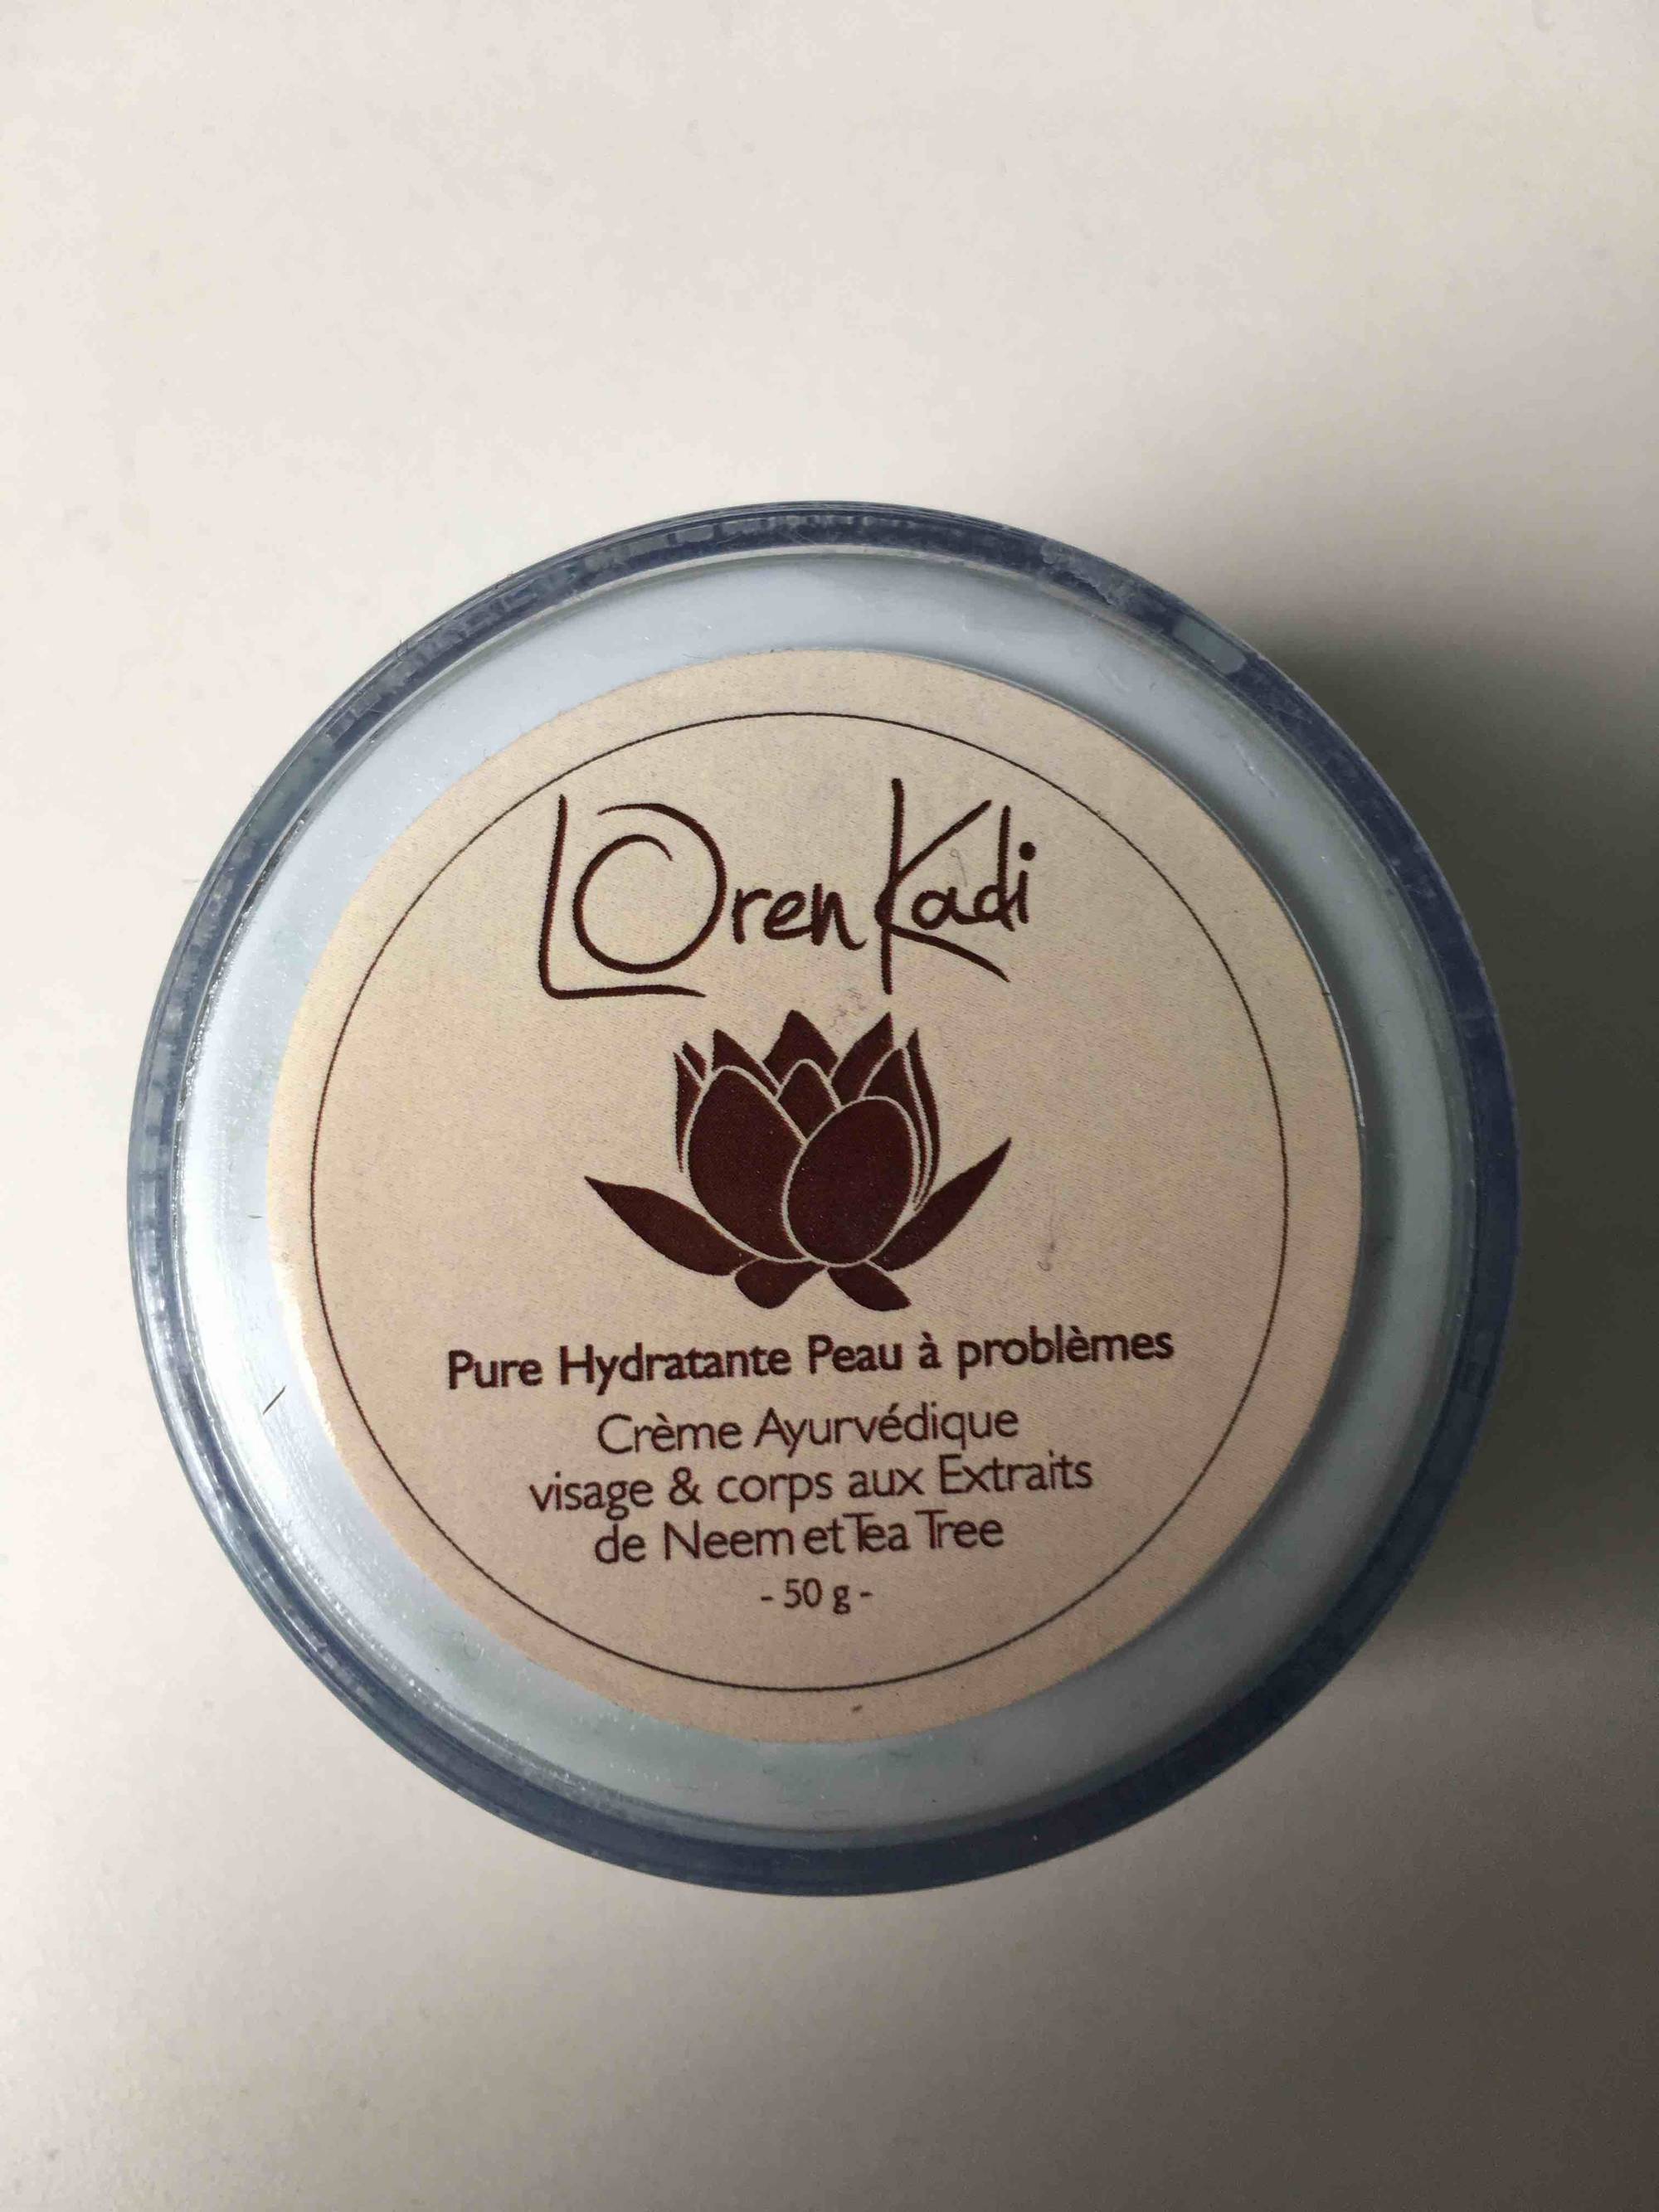 LOREN KADI - Pure hydratante peau à problèmes - Crème auyvédique